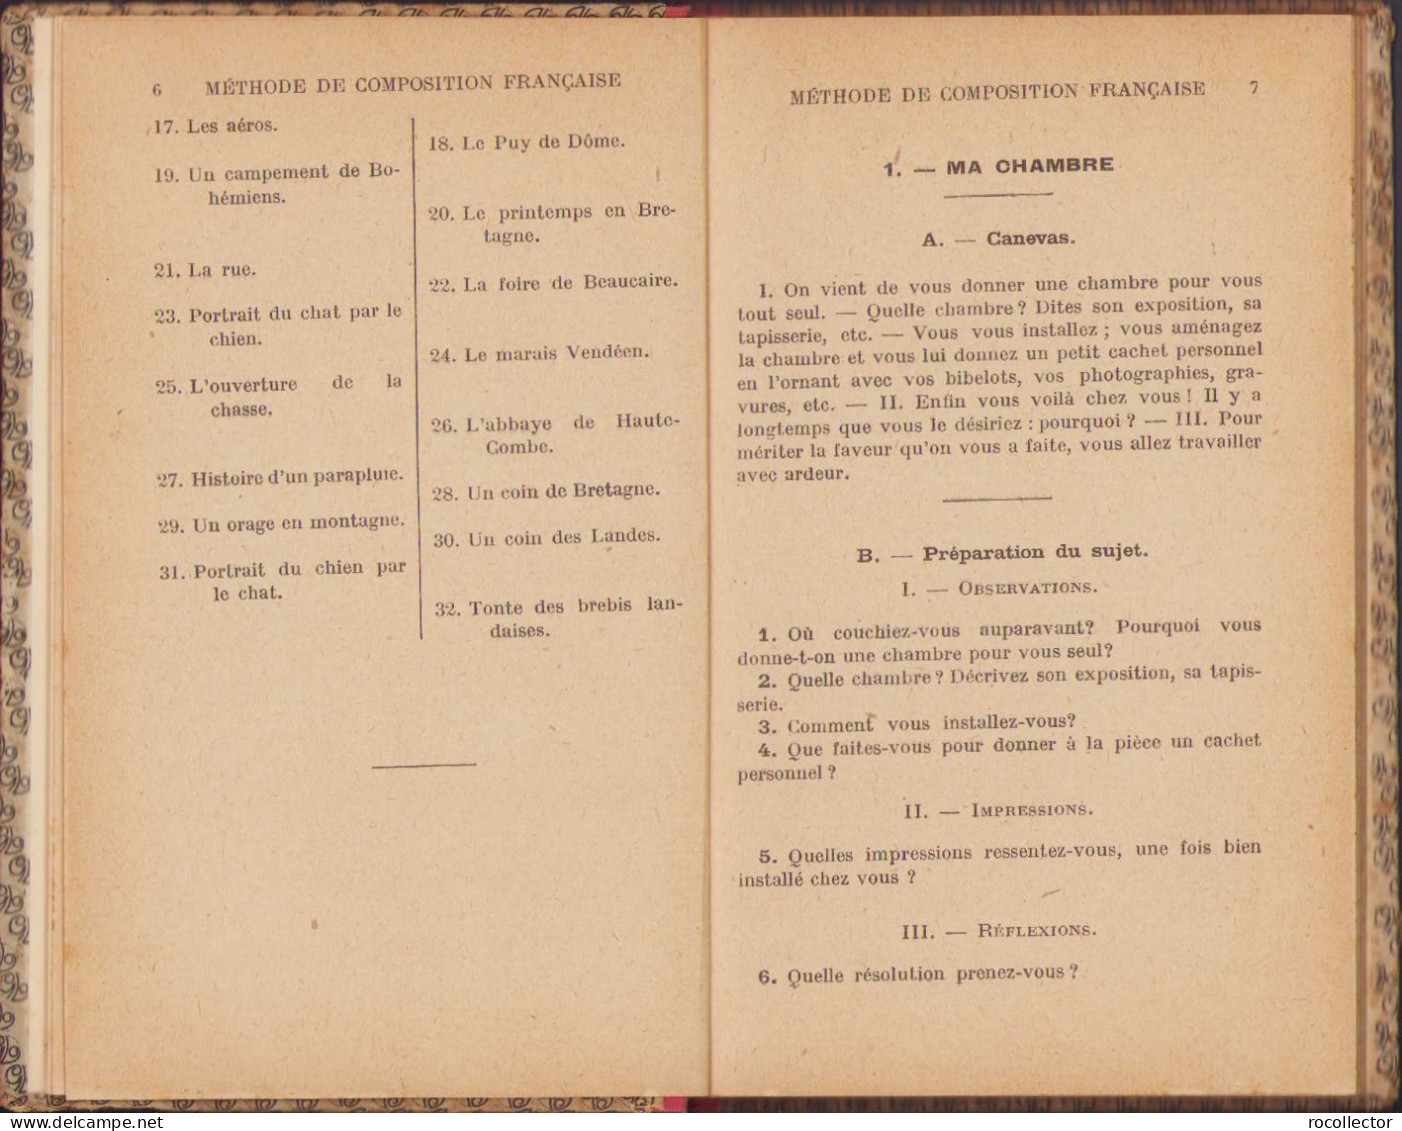 Methode De Composition Francaise Livre De L’Eleve, 1926 C315 - Old Books